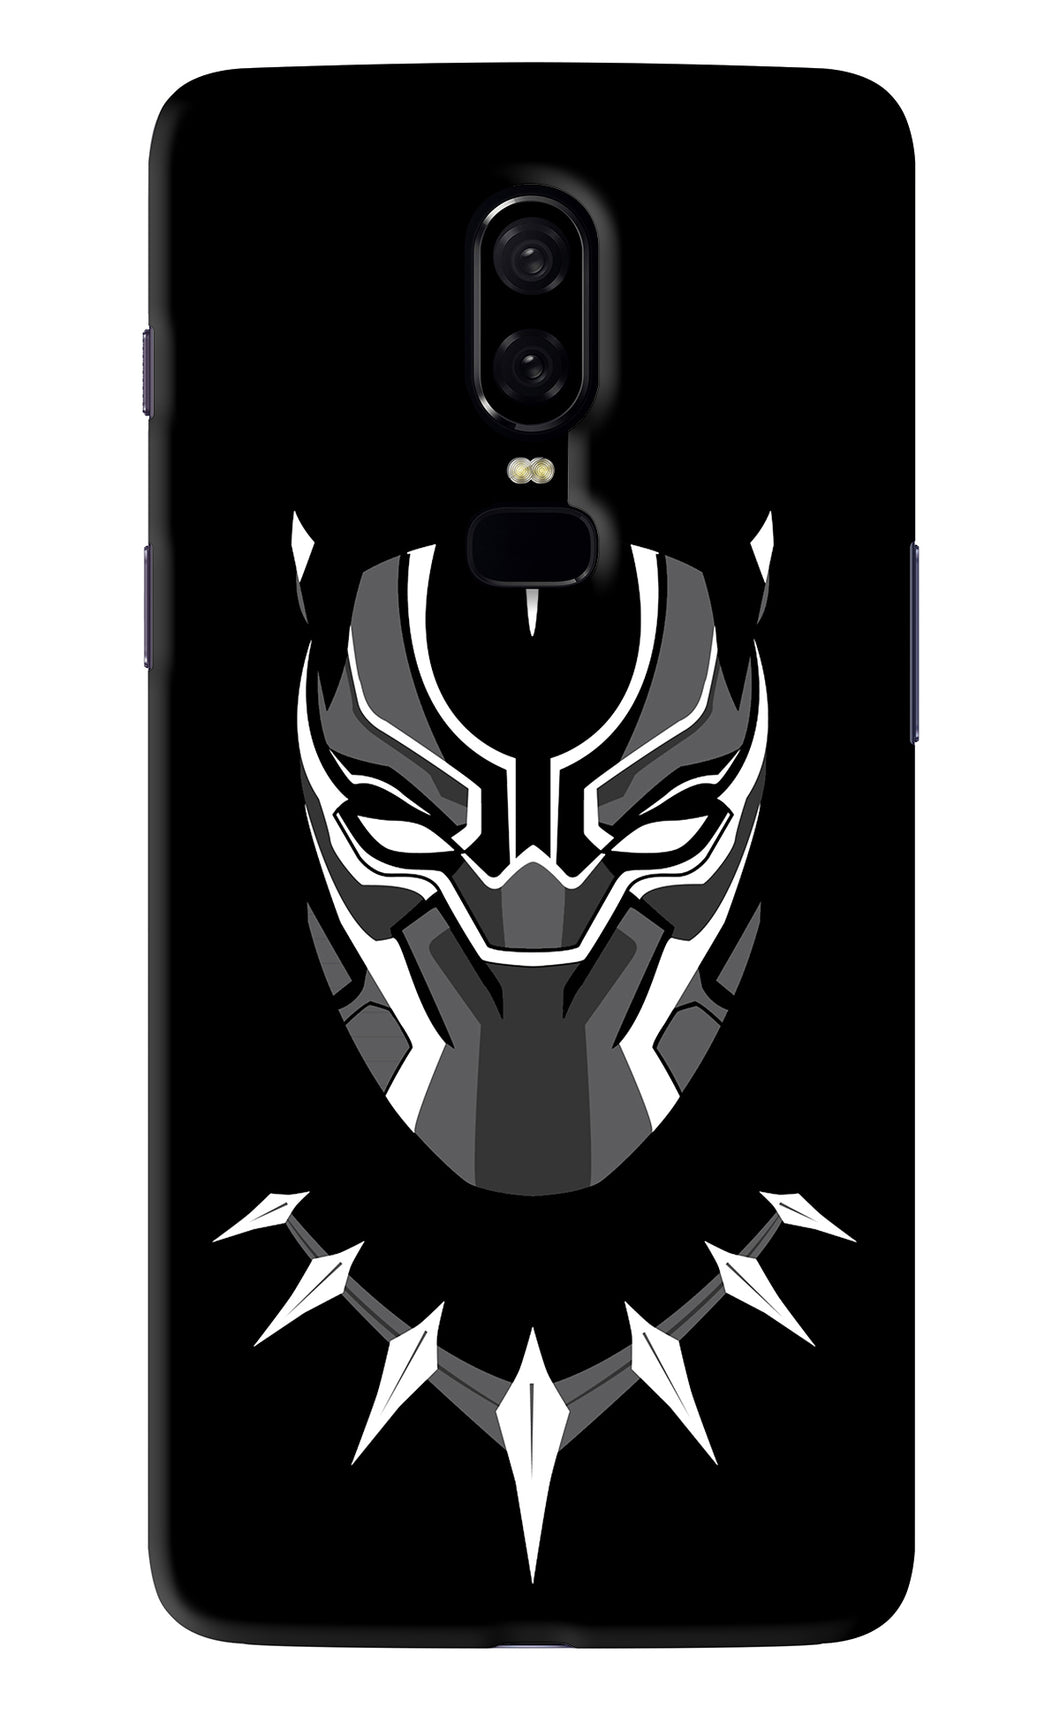 Black Panther OnePlus 6 Back Skin Wrap